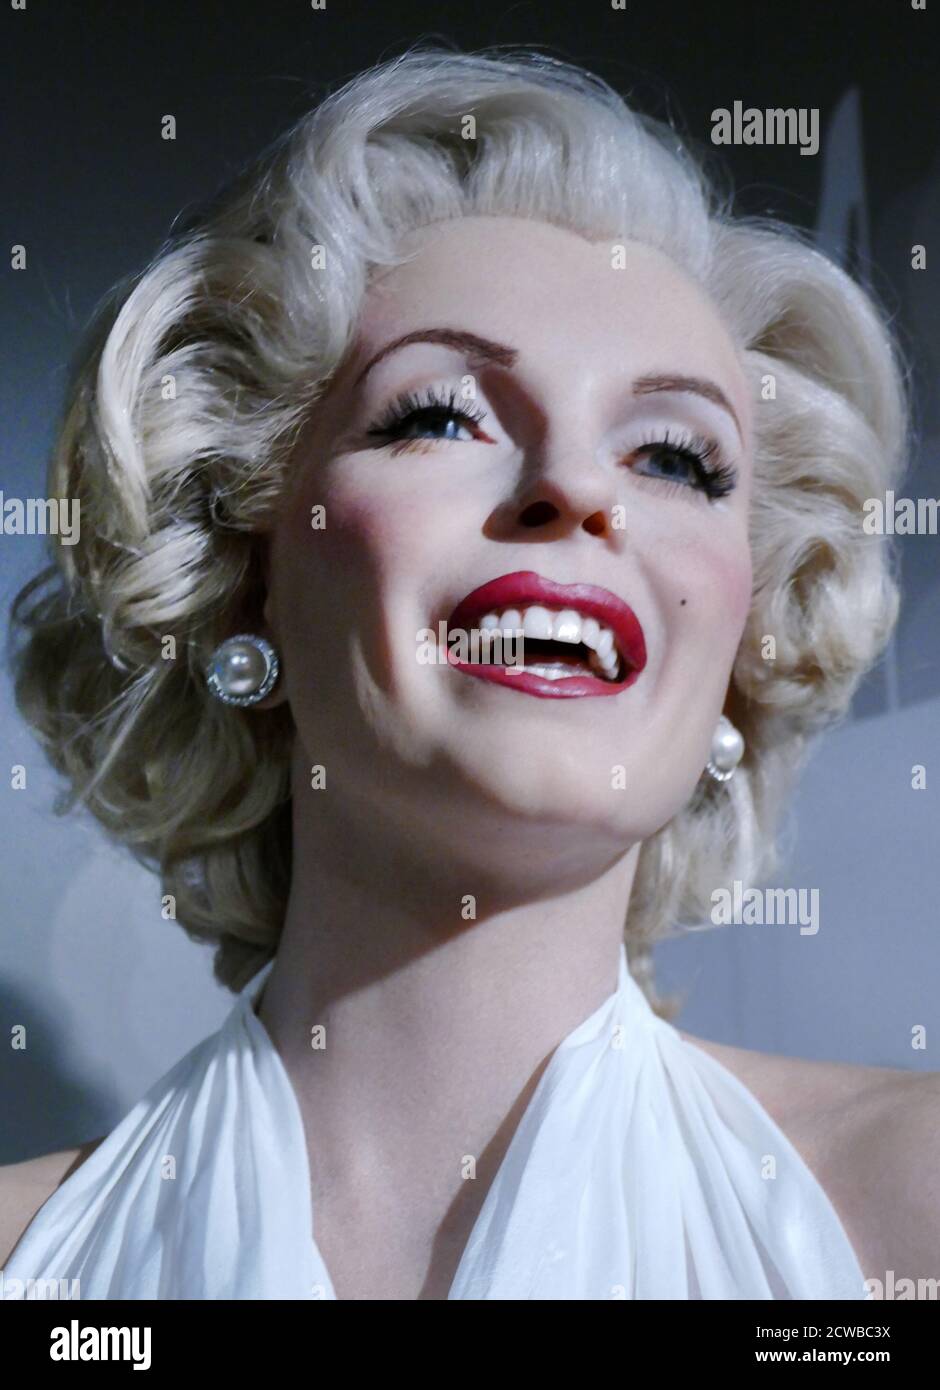 Wachsfigur mit Darstellung von Marilyn Monroe (1926 - 1962); amerikanische Schauspielerin, Model und Sängerin. Stockfoto